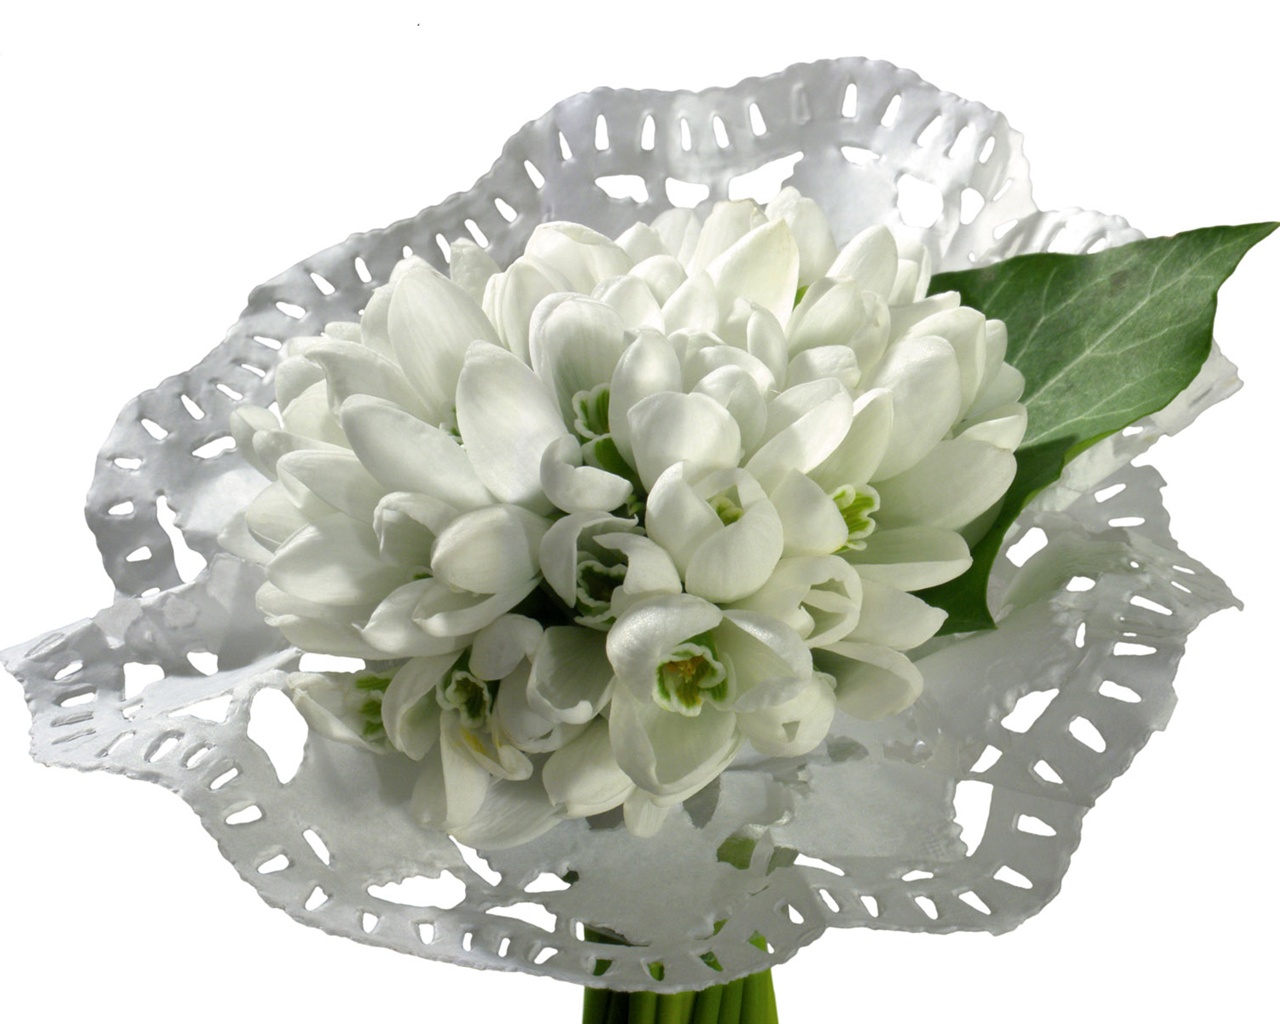 눈같이 흰 꽃 벽지 #8 - 1280x1024